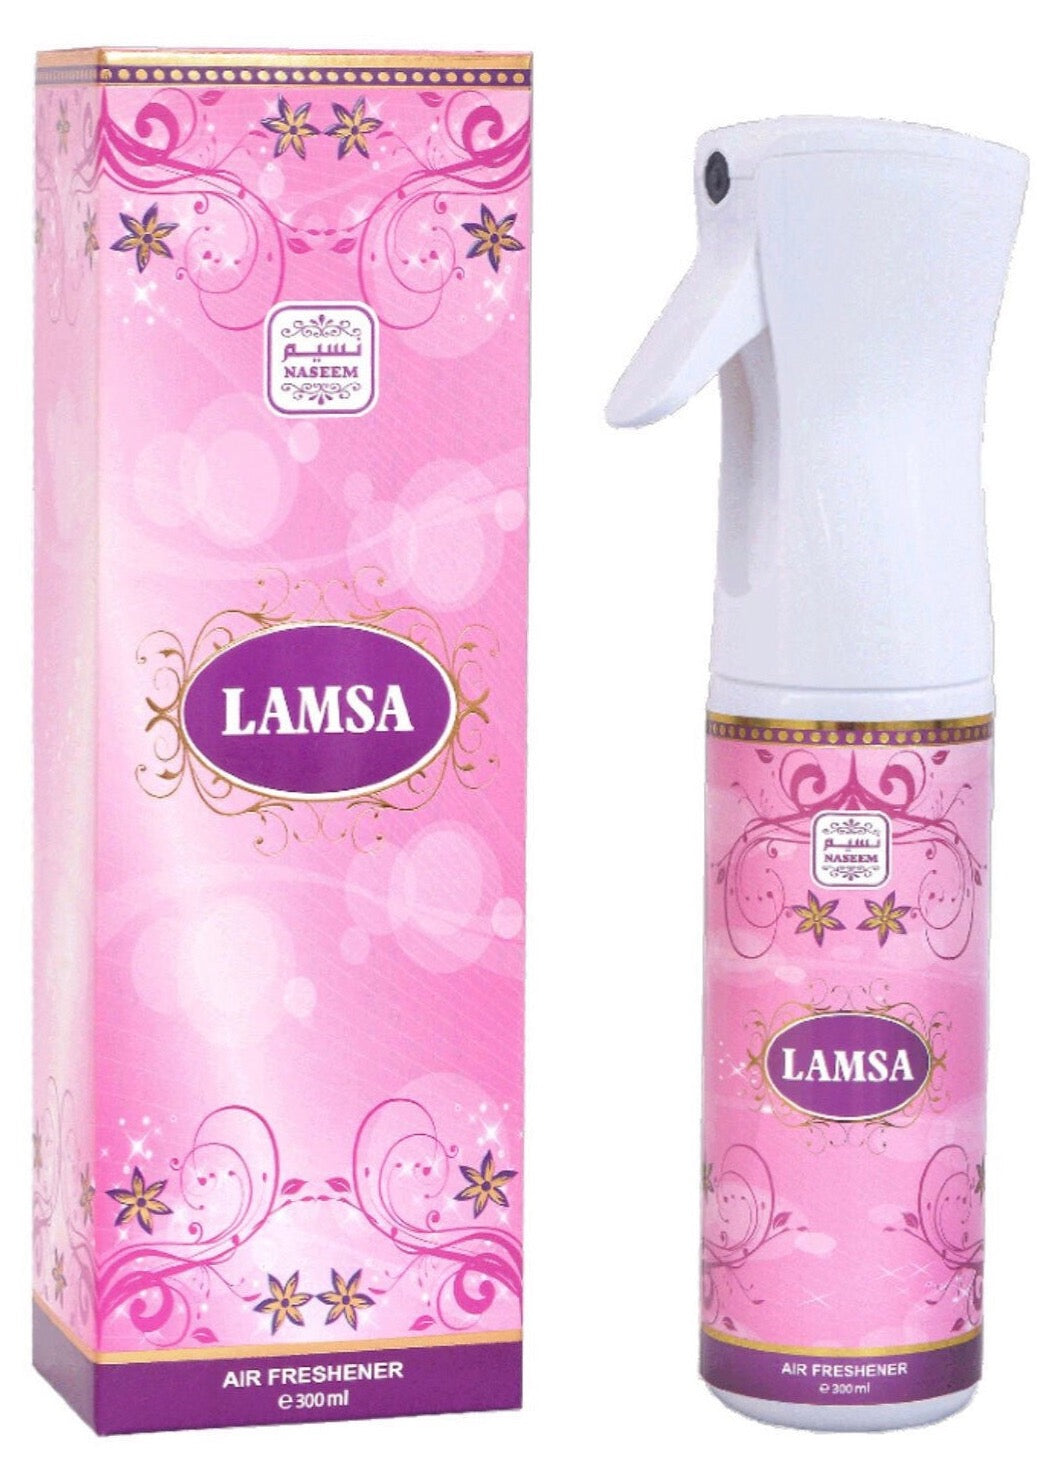 Lamsa Air Freshener